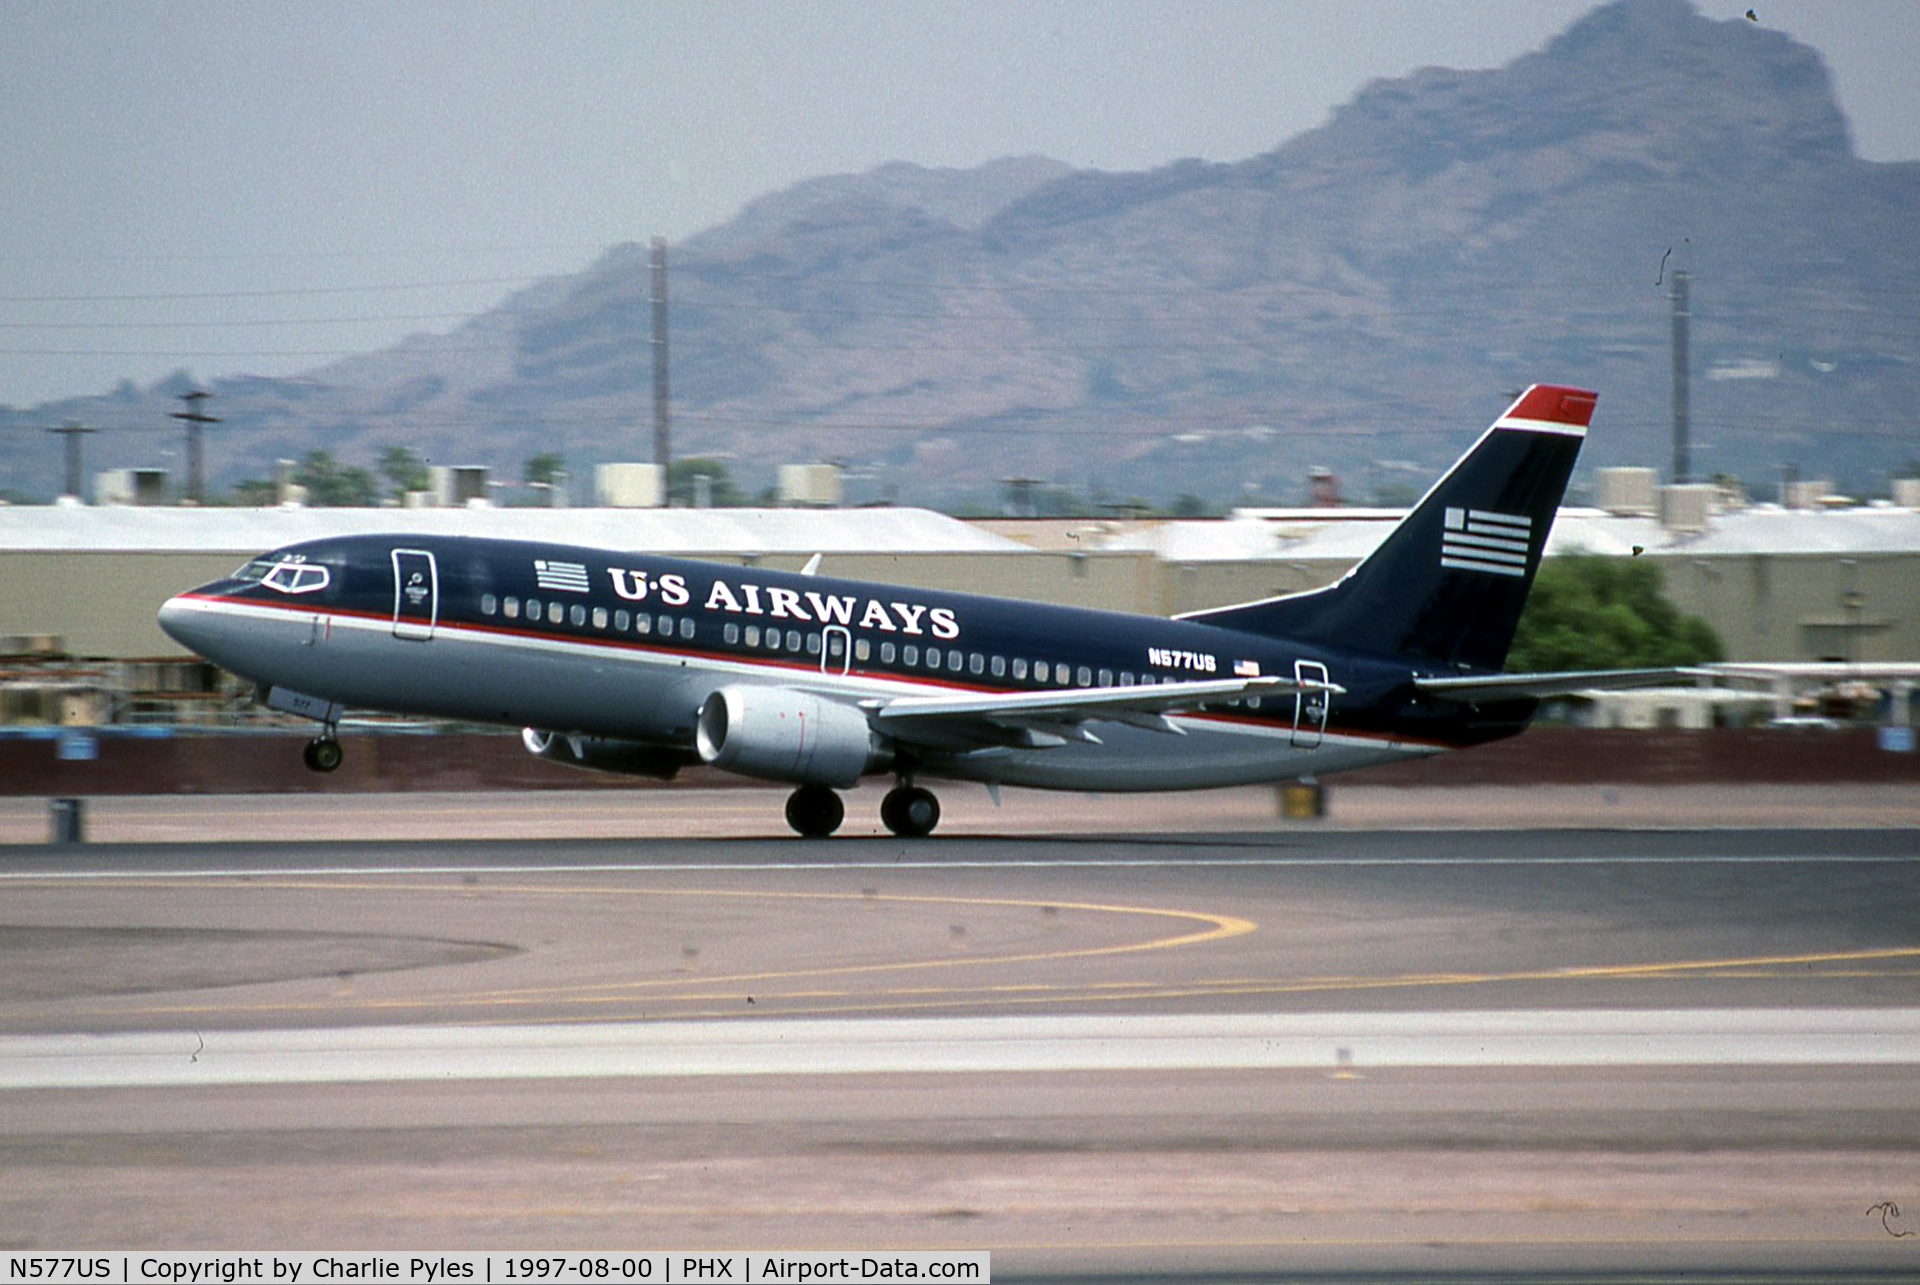 N577US, 1988 Boeing 737-301 C/N 23742, US AIRWAYS ex Piedmont